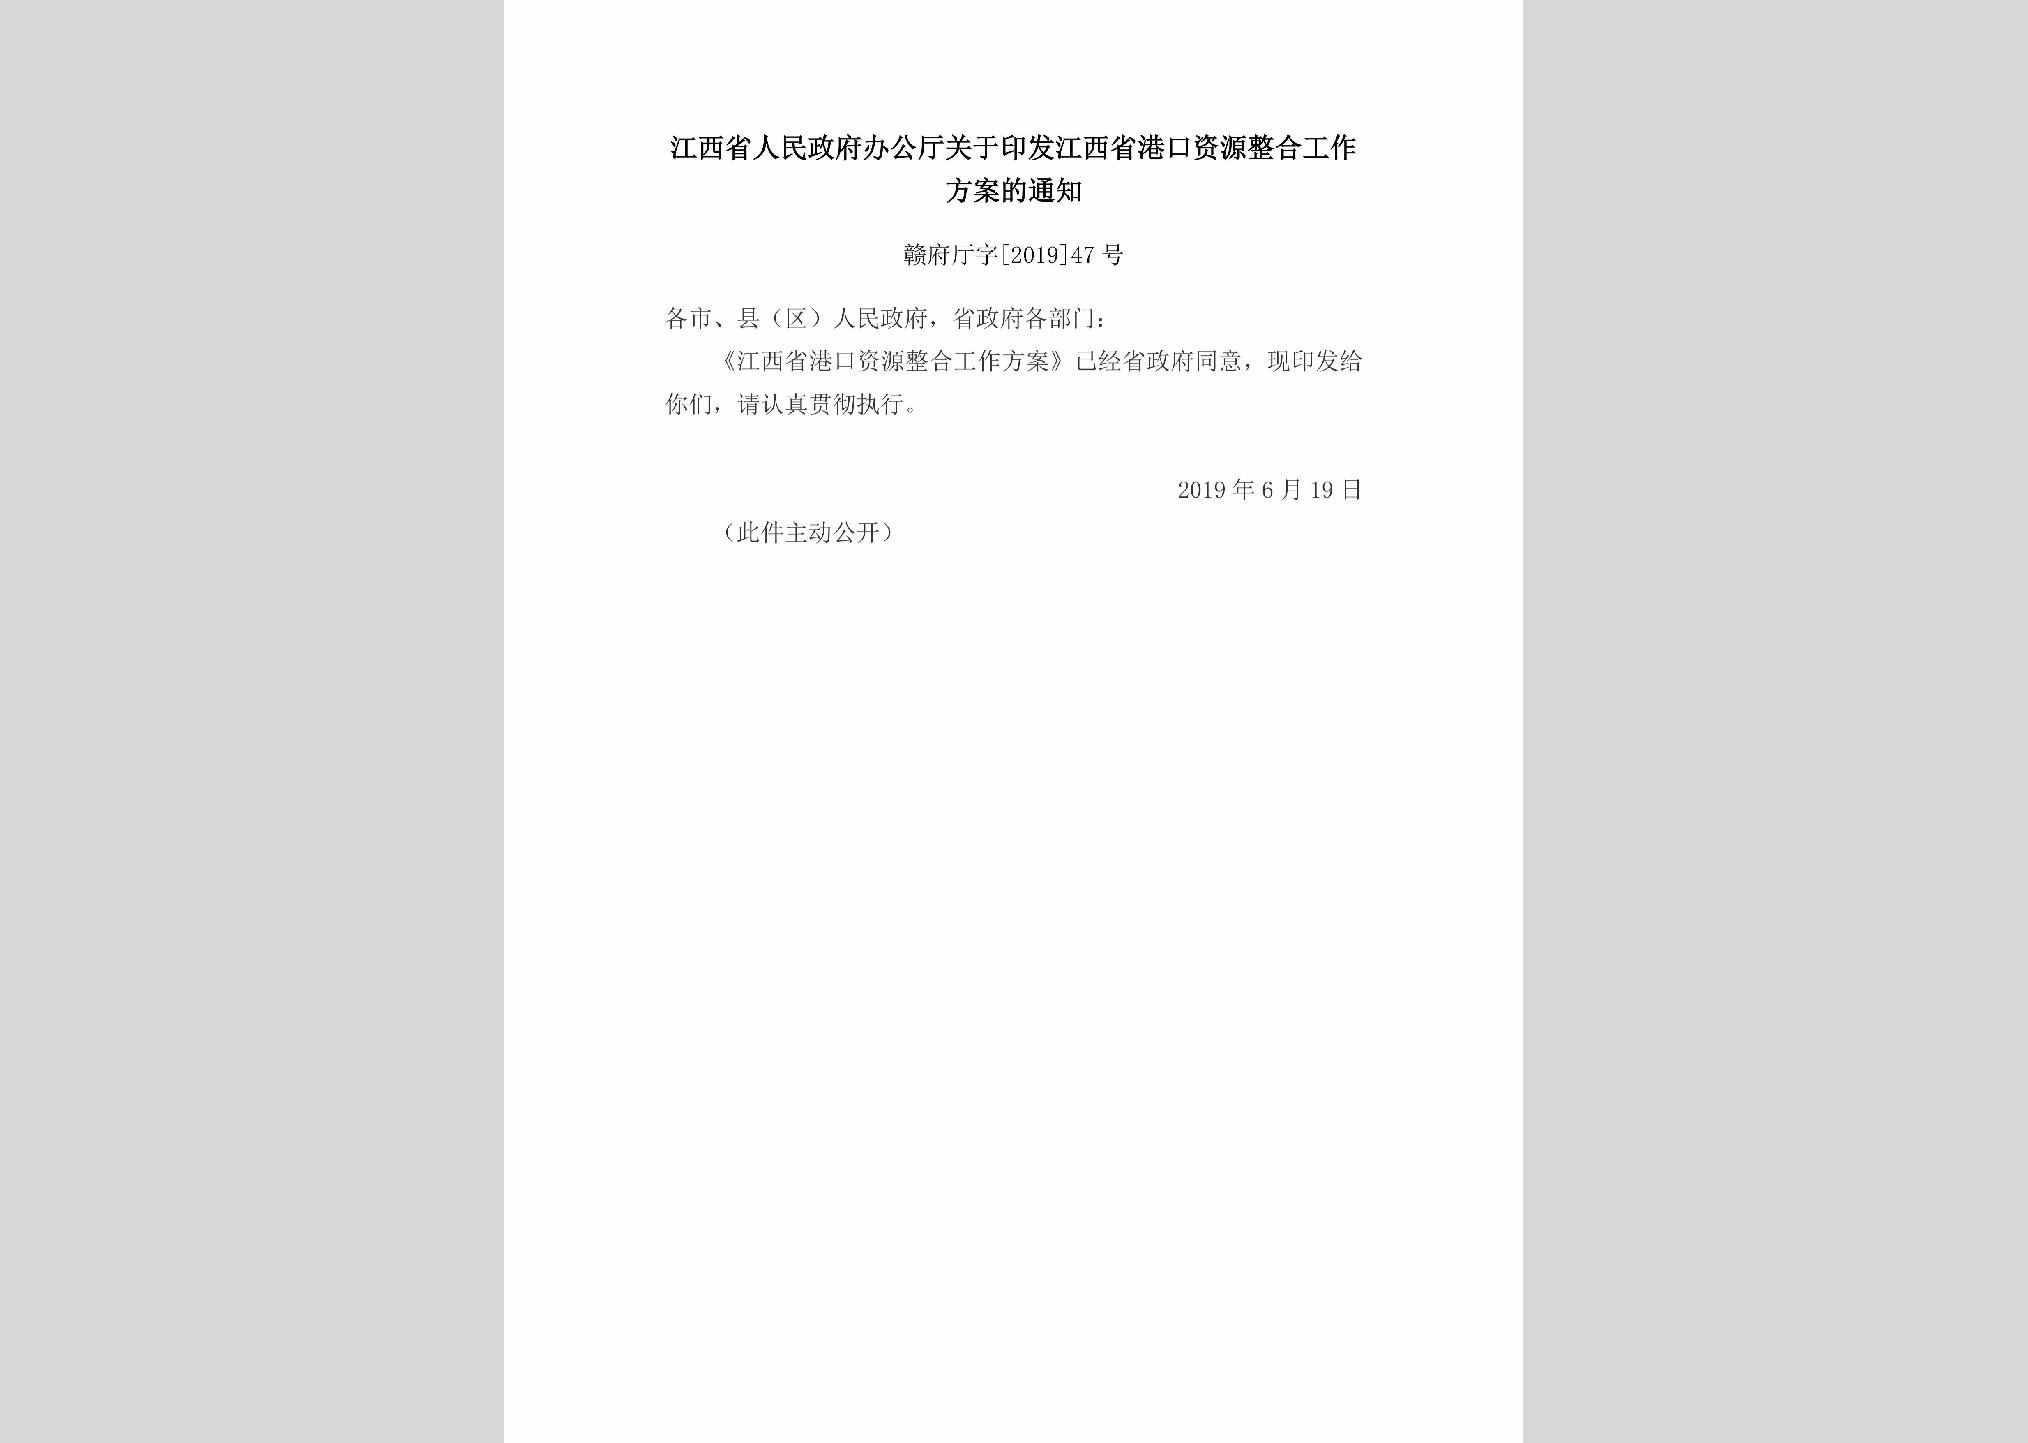 赣府厅字[2019]47号：江西省人民政府办公厅关于印发江西省港口资源整合工作方案的通知